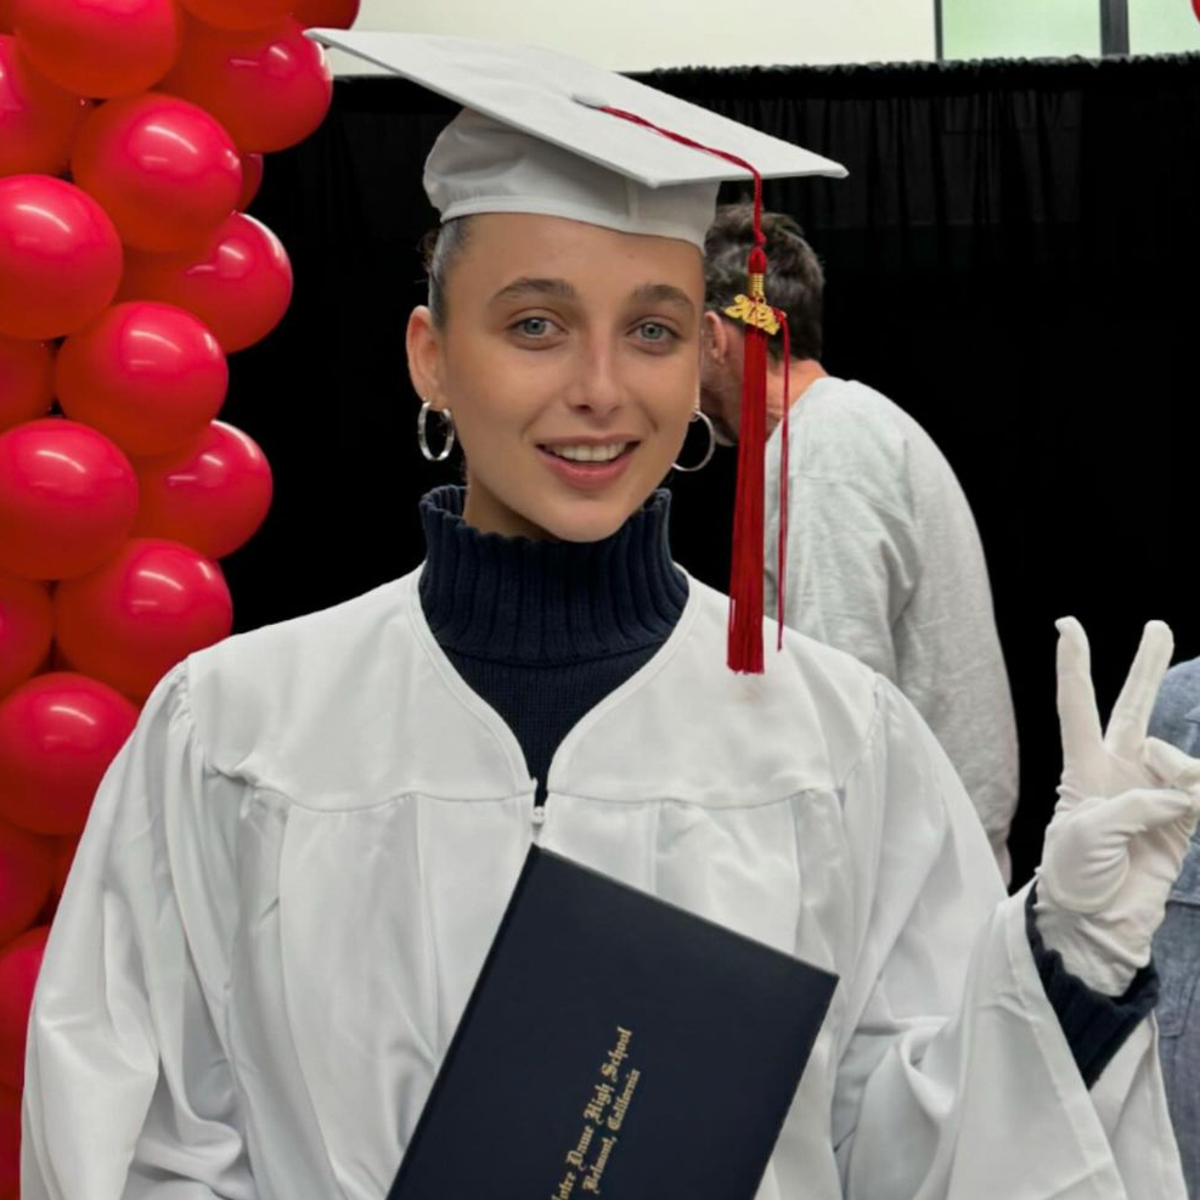 Ема Чембърлейн празнува завършването си на гимназия на 23-годишна възраст със стоплящи сърцето снимки